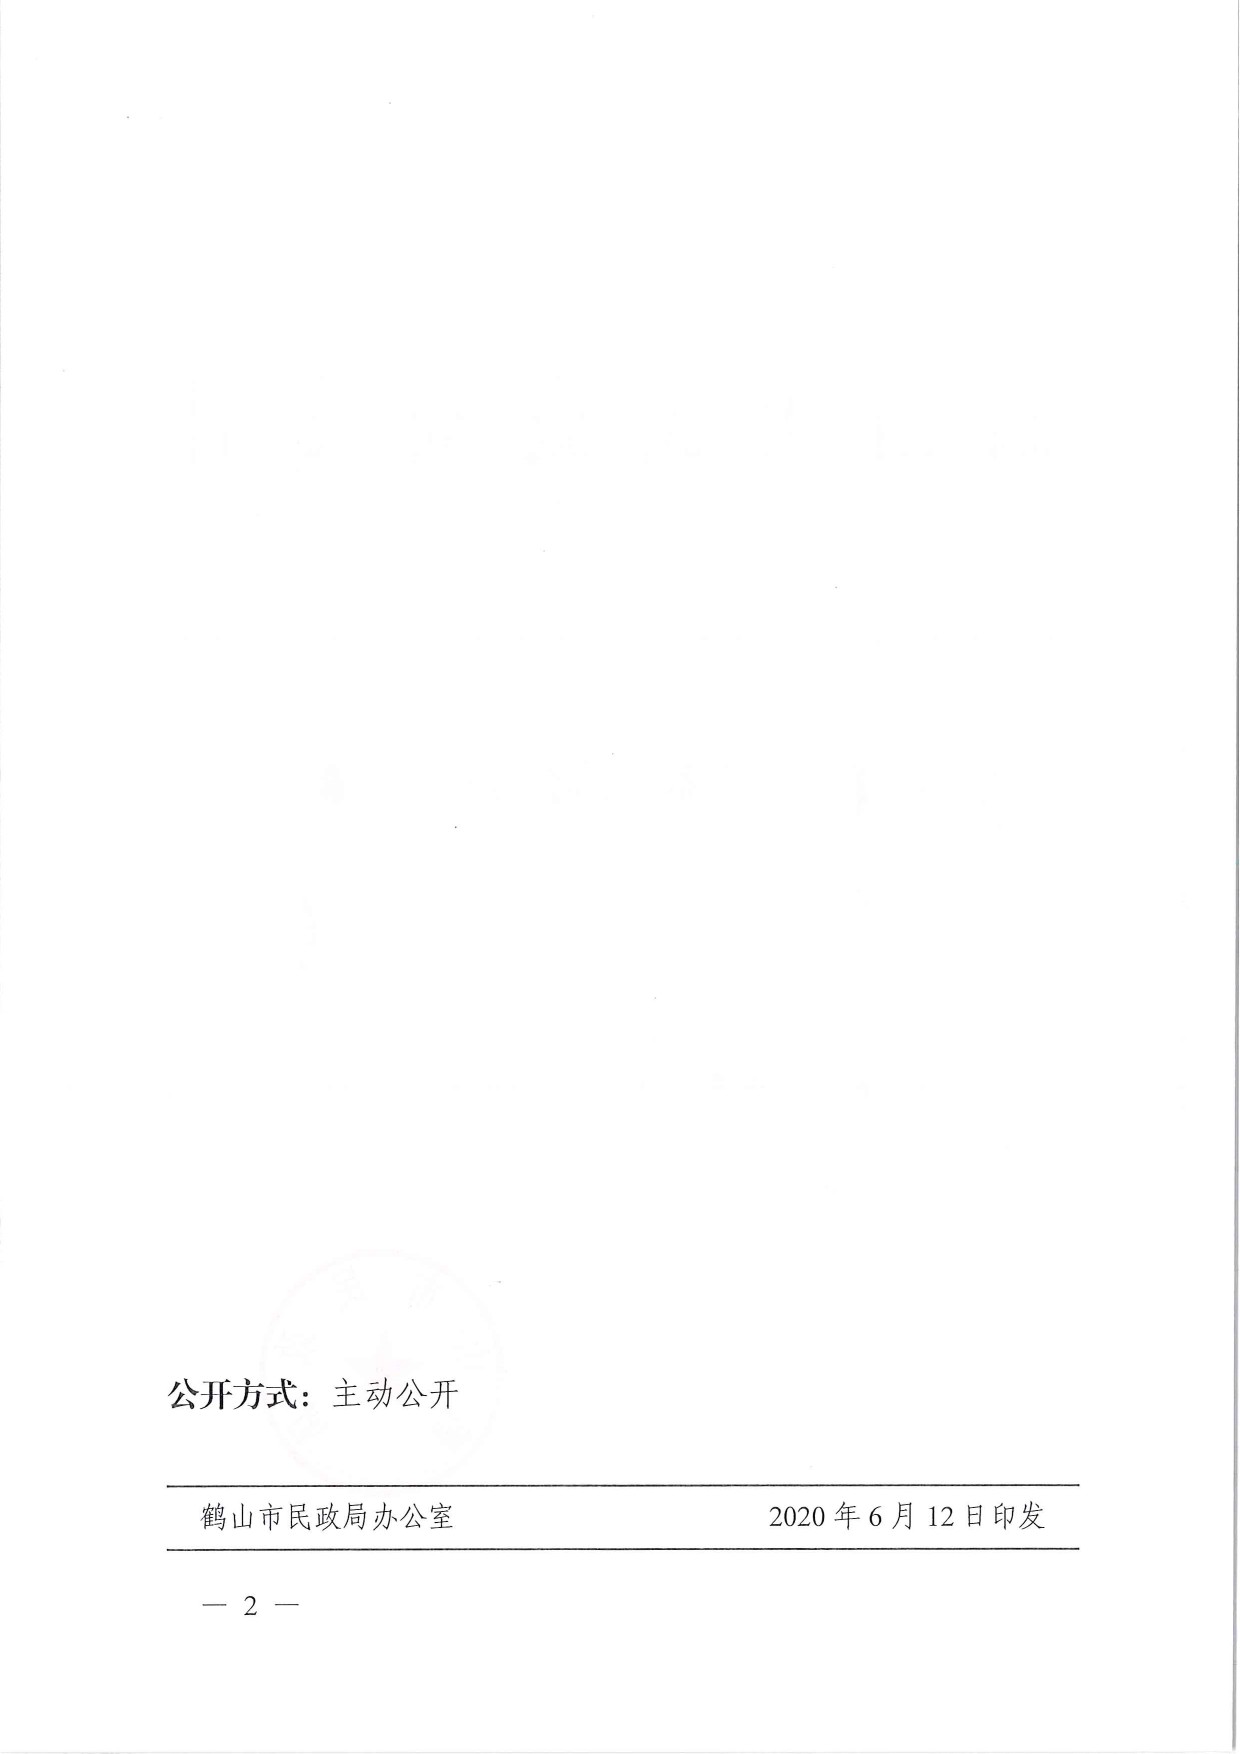 鹤民社〔2020〕29号关于准予鹤山市茶叶协会变更登记的批复-4.jpg